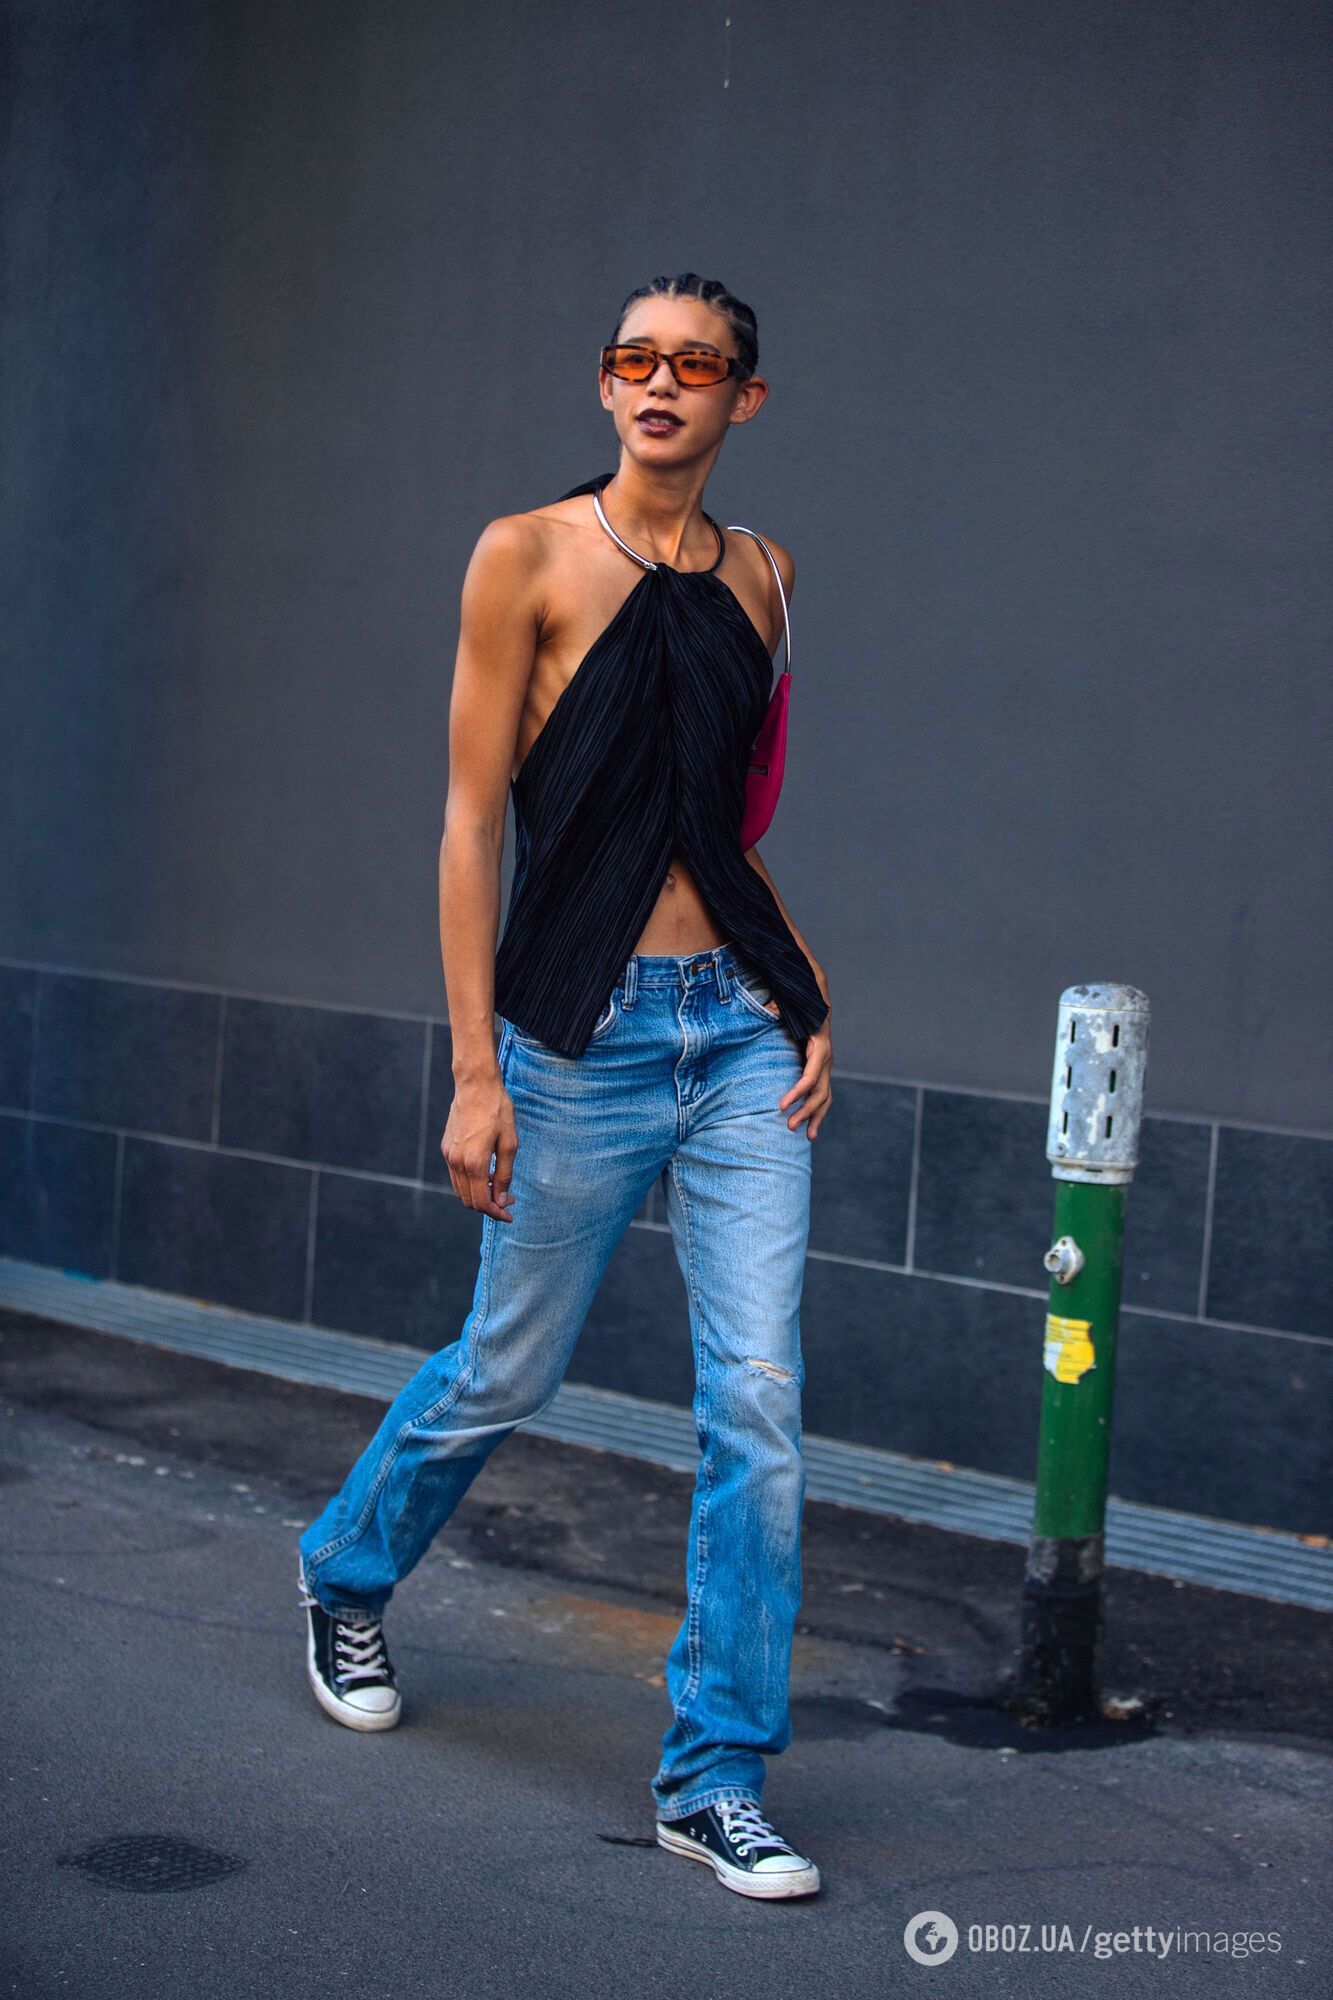 Юбки, джинсы и шорты с низкой посадкой снова ворвались на показы модных брендов